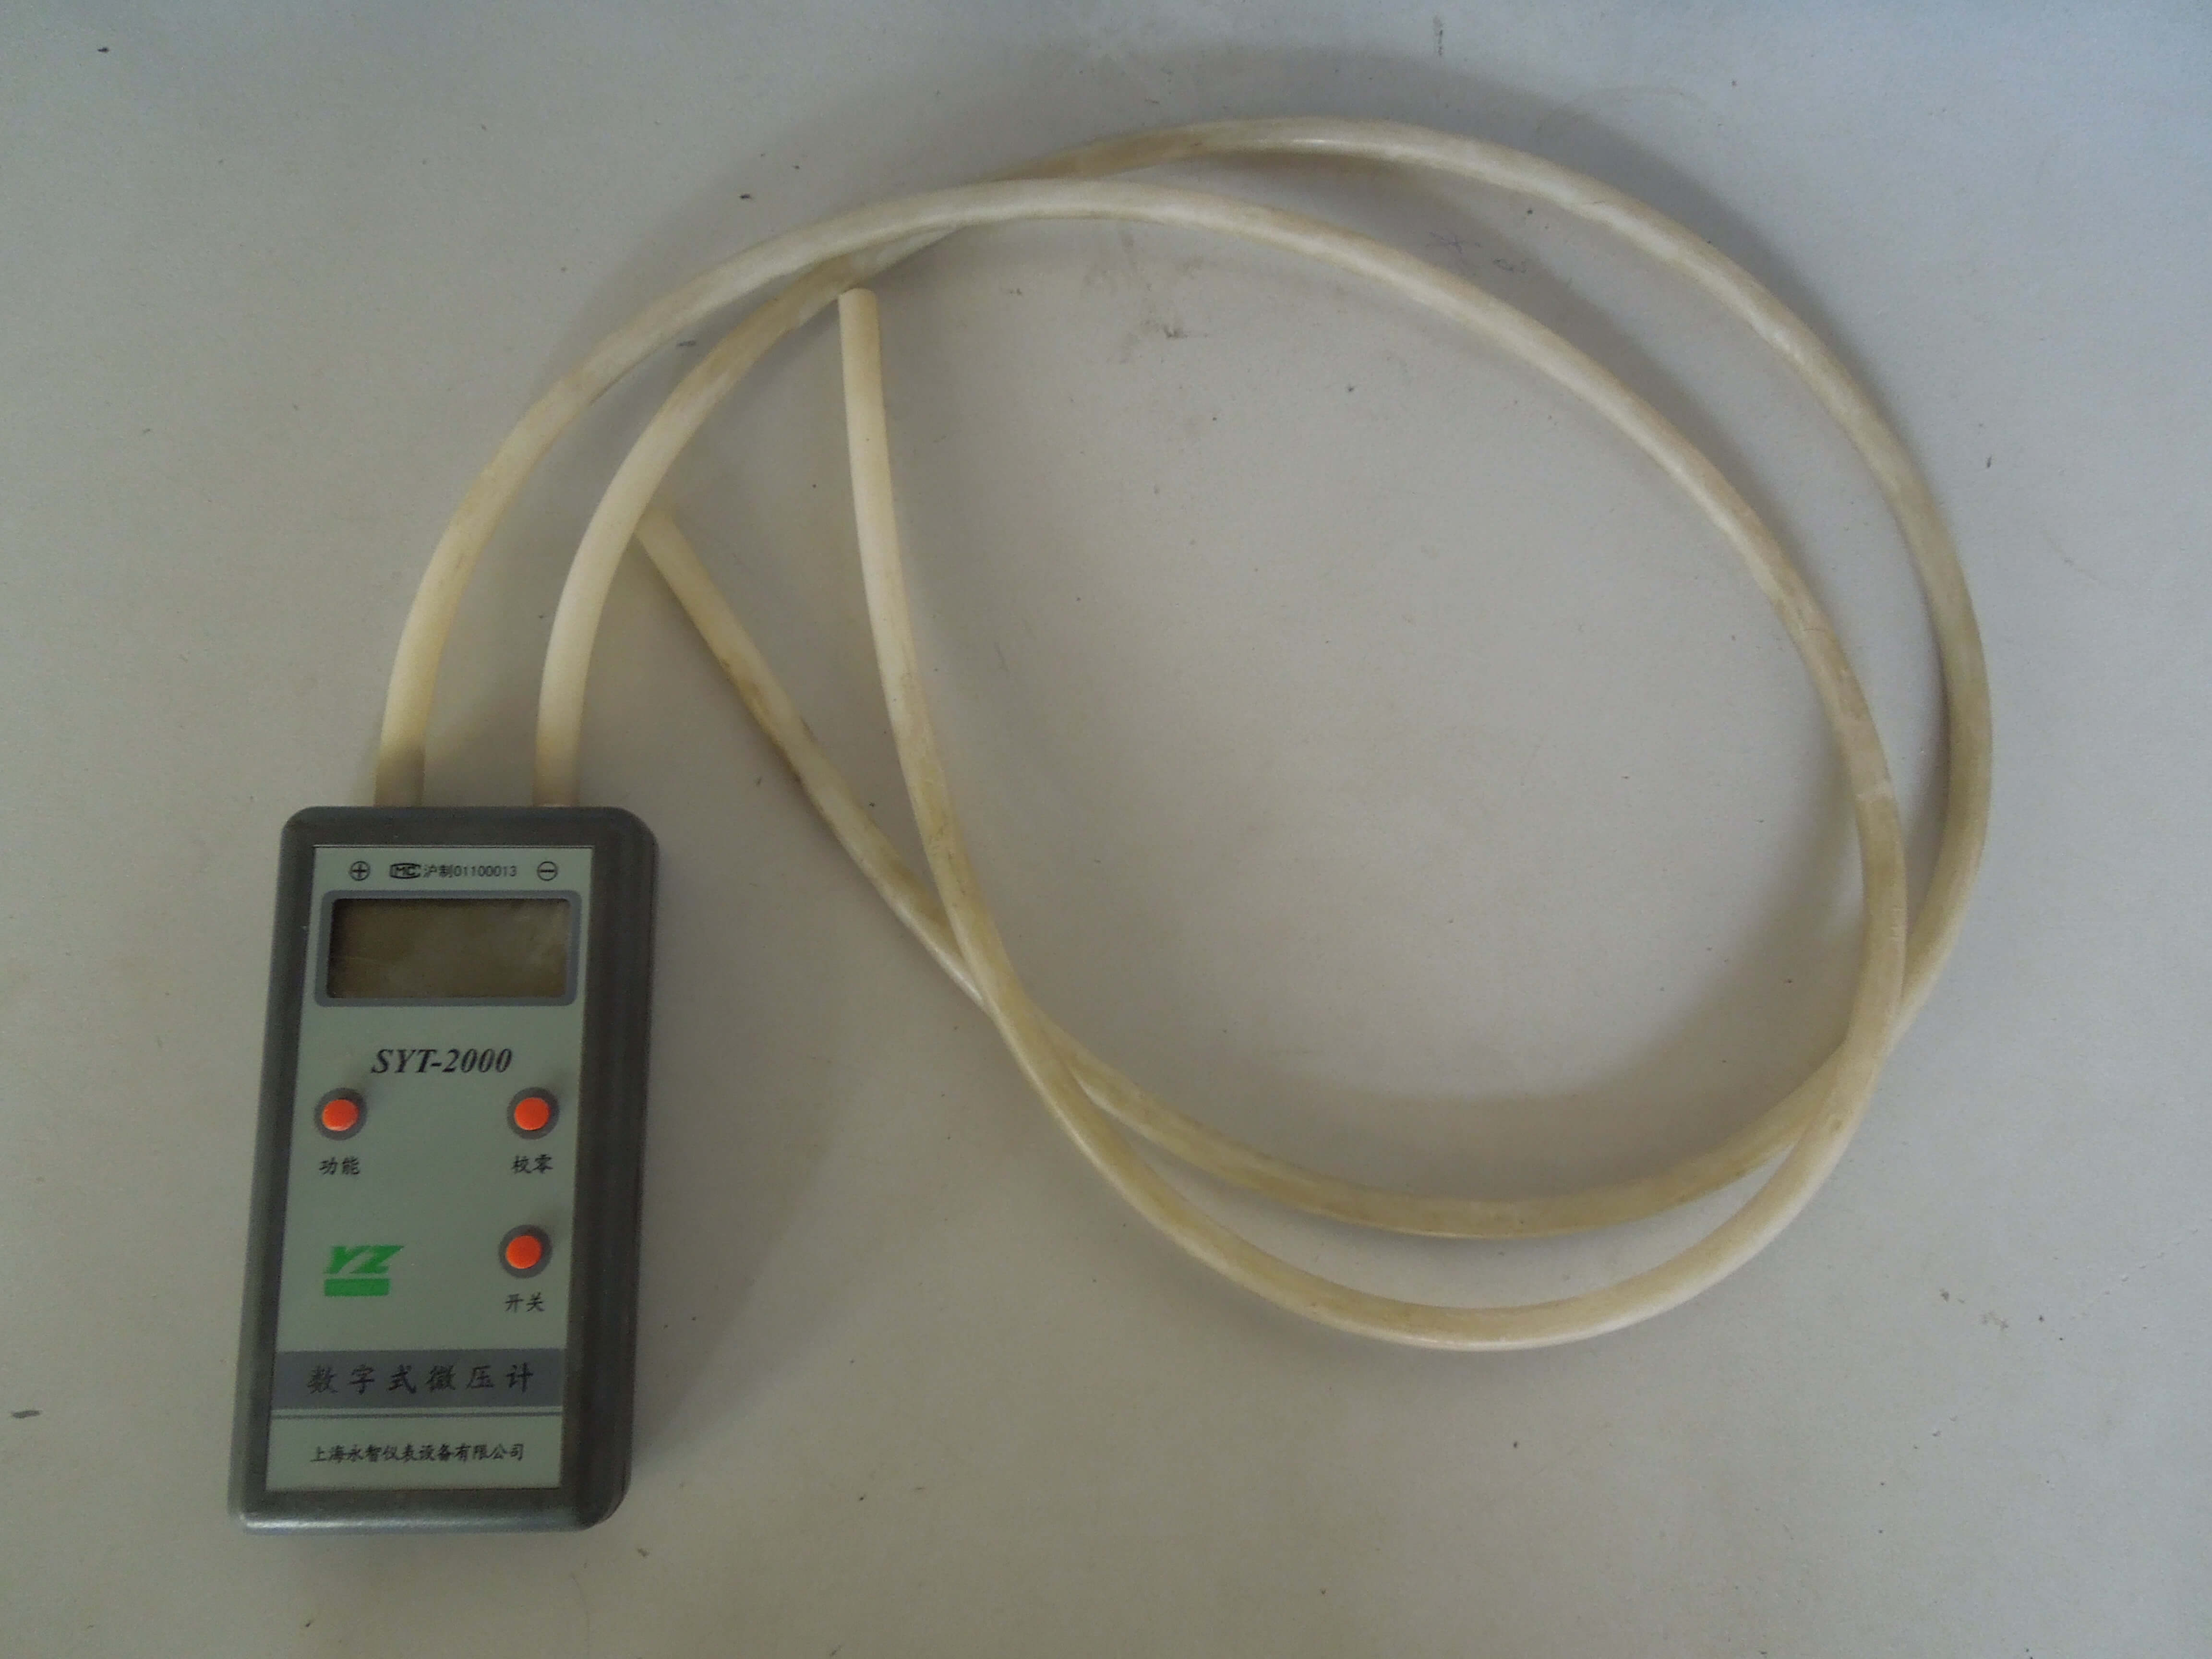 ¿Qué instrumento se utiliza para medir la presión? 2 instrumentos utilizados para medir la presión